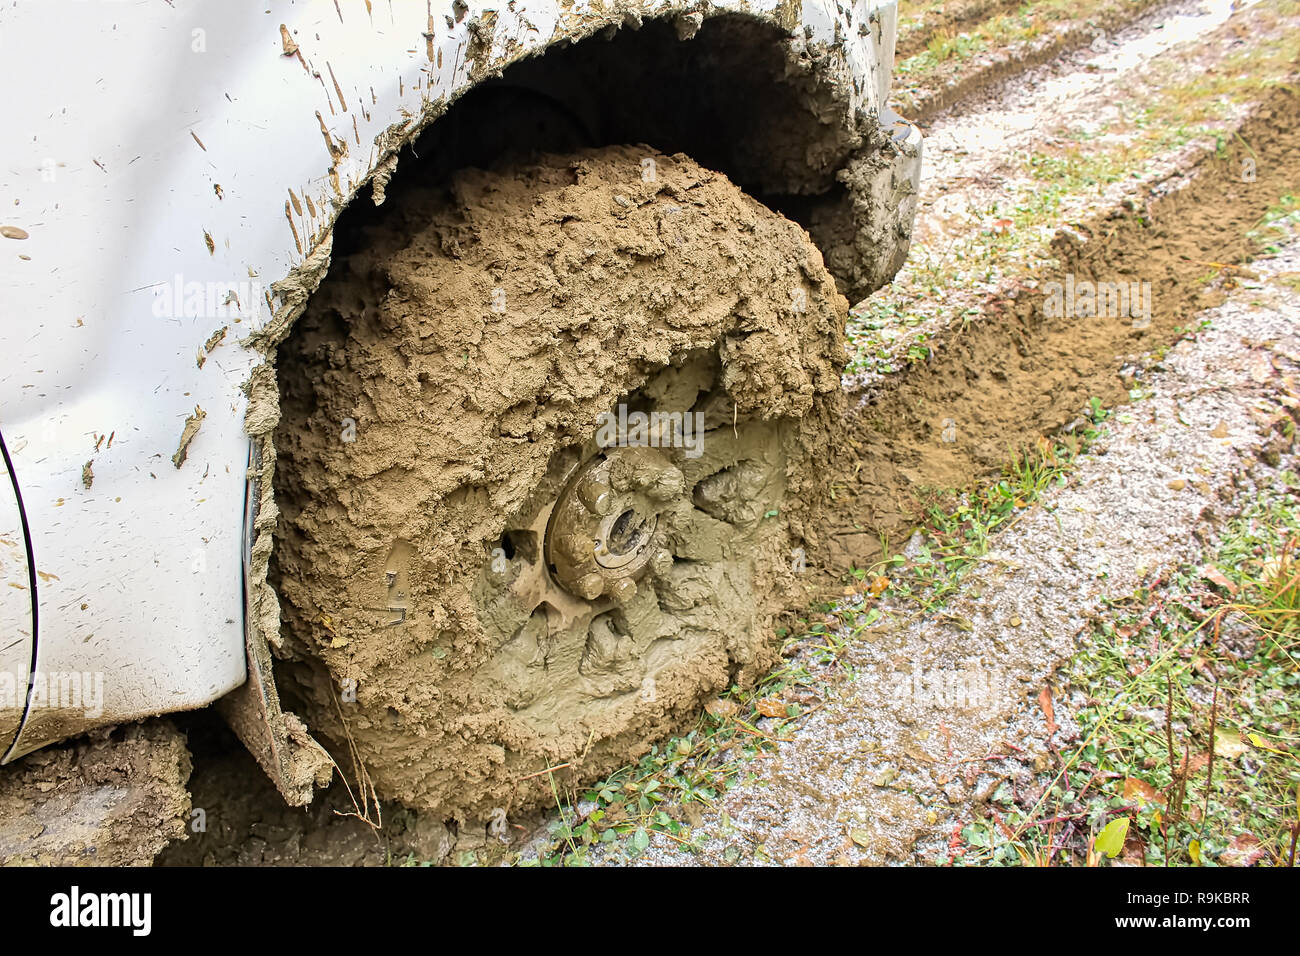 La roue d'un véhicule incased dans la boue Banque D'Images